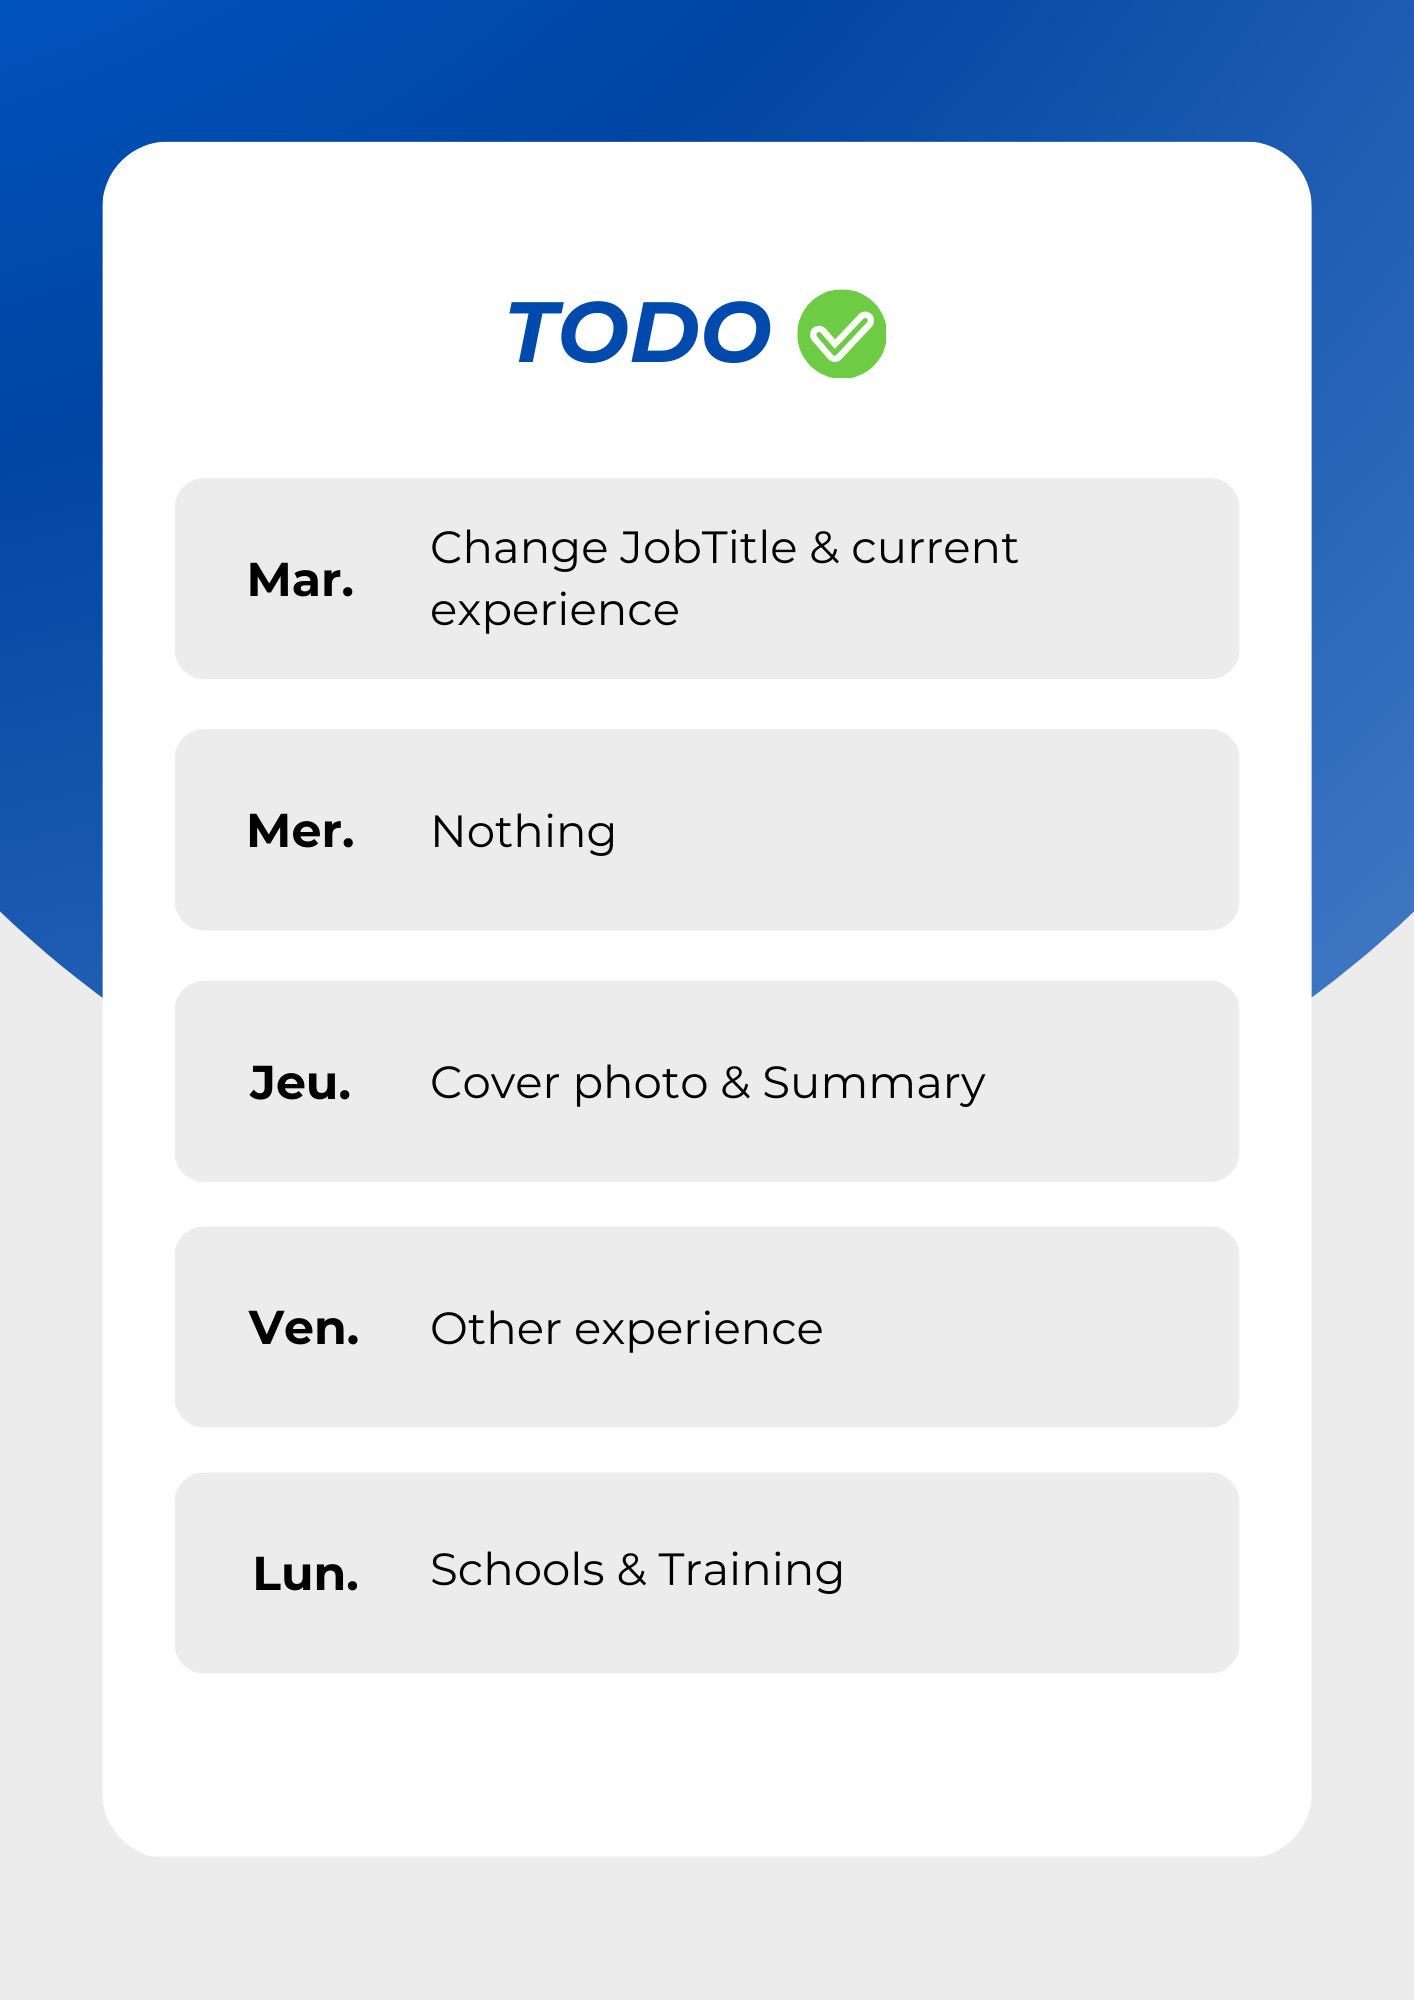 TODO Rebranding